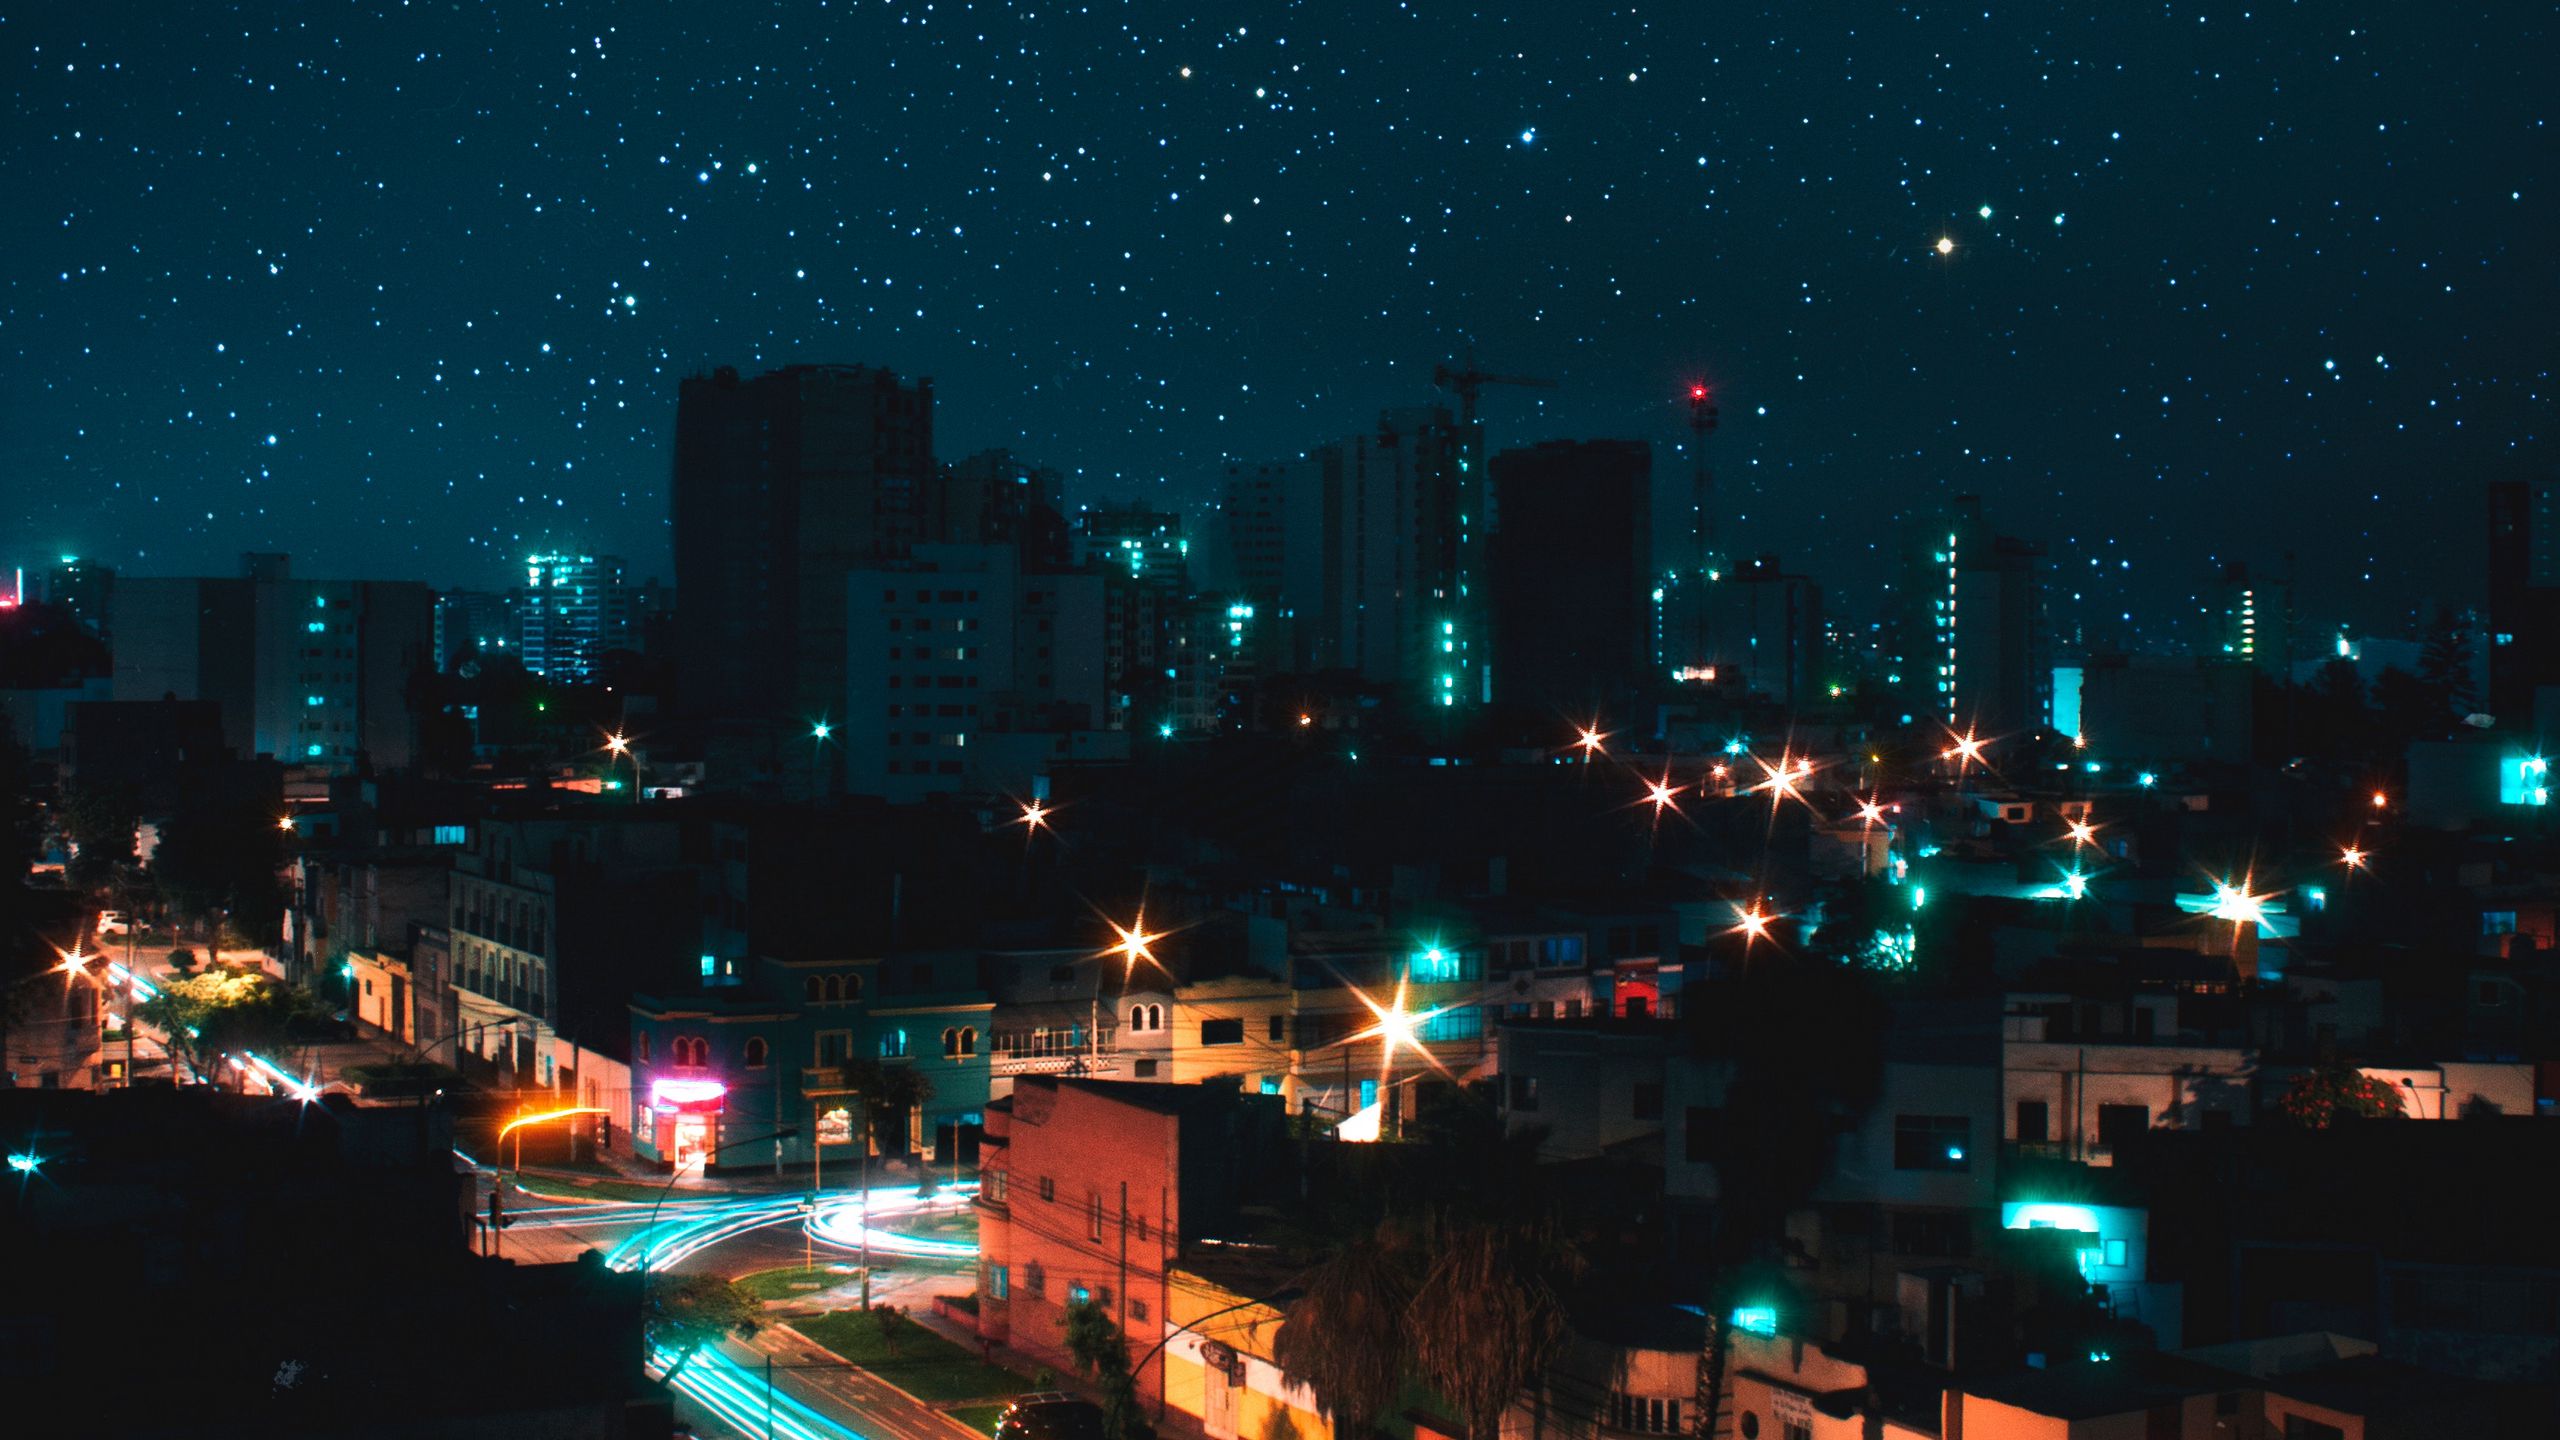 Bạn muốn trải nghiệm cảm giác nhìn thành phố ban đêm từ trên cao? Tải ngay ảnh nền đêm thành phố sao từ trên cao để được hòa mình vào không gian đầy huyền ảo và thăng hoa của những tòa nhà lung linh ánh sáng. Chắc chắn bạn sẽ bị sức hấp dẫn của bức ảnh này thu hút ngay từ lần đầu nhìn thấy.